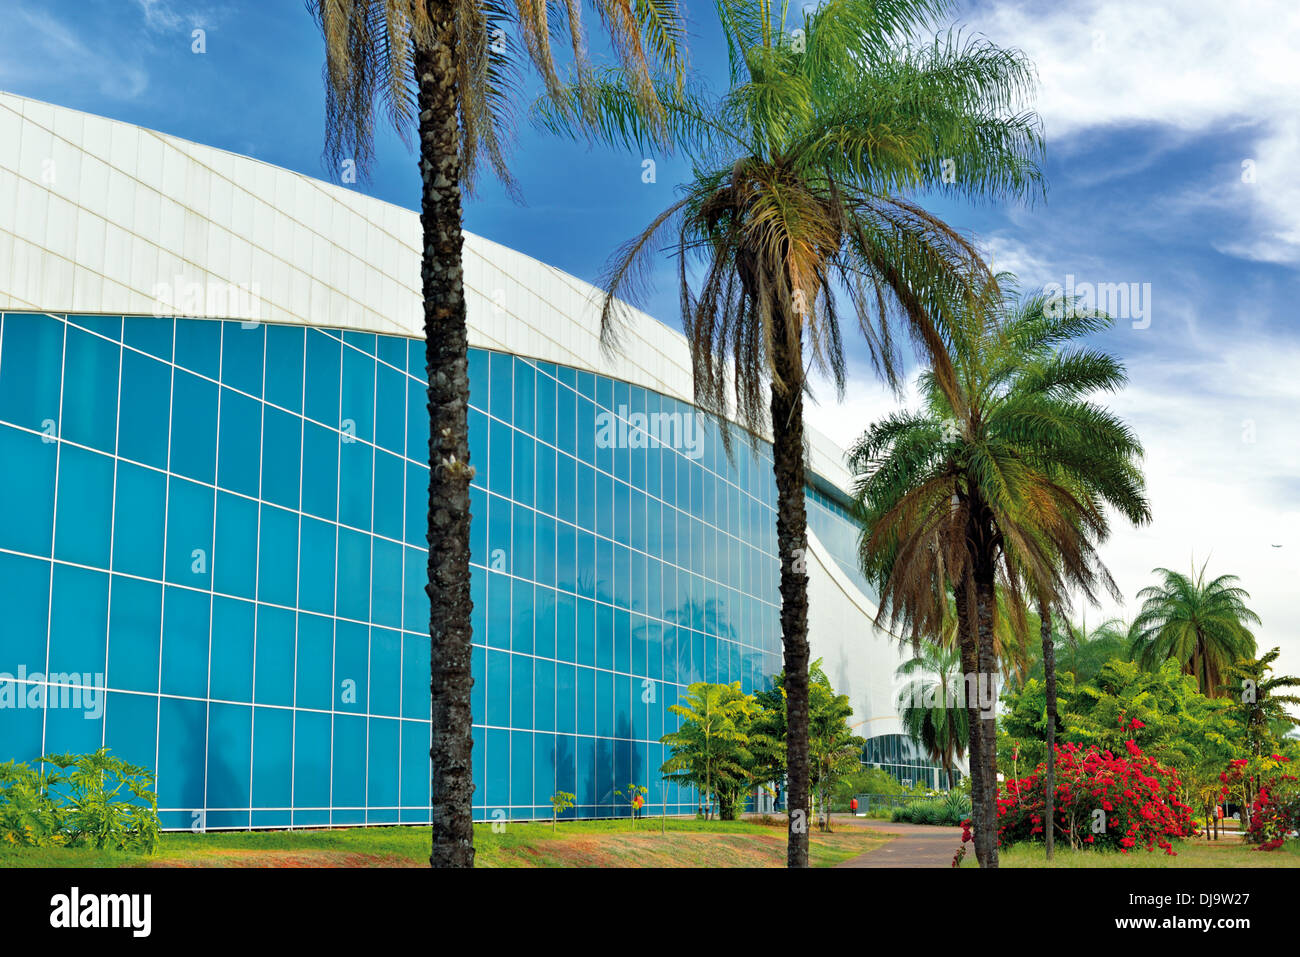 Il Brasile, Brasilia: palme e la facciata in vetro del centro congressi Ulysses Guimaraes Foto Stock